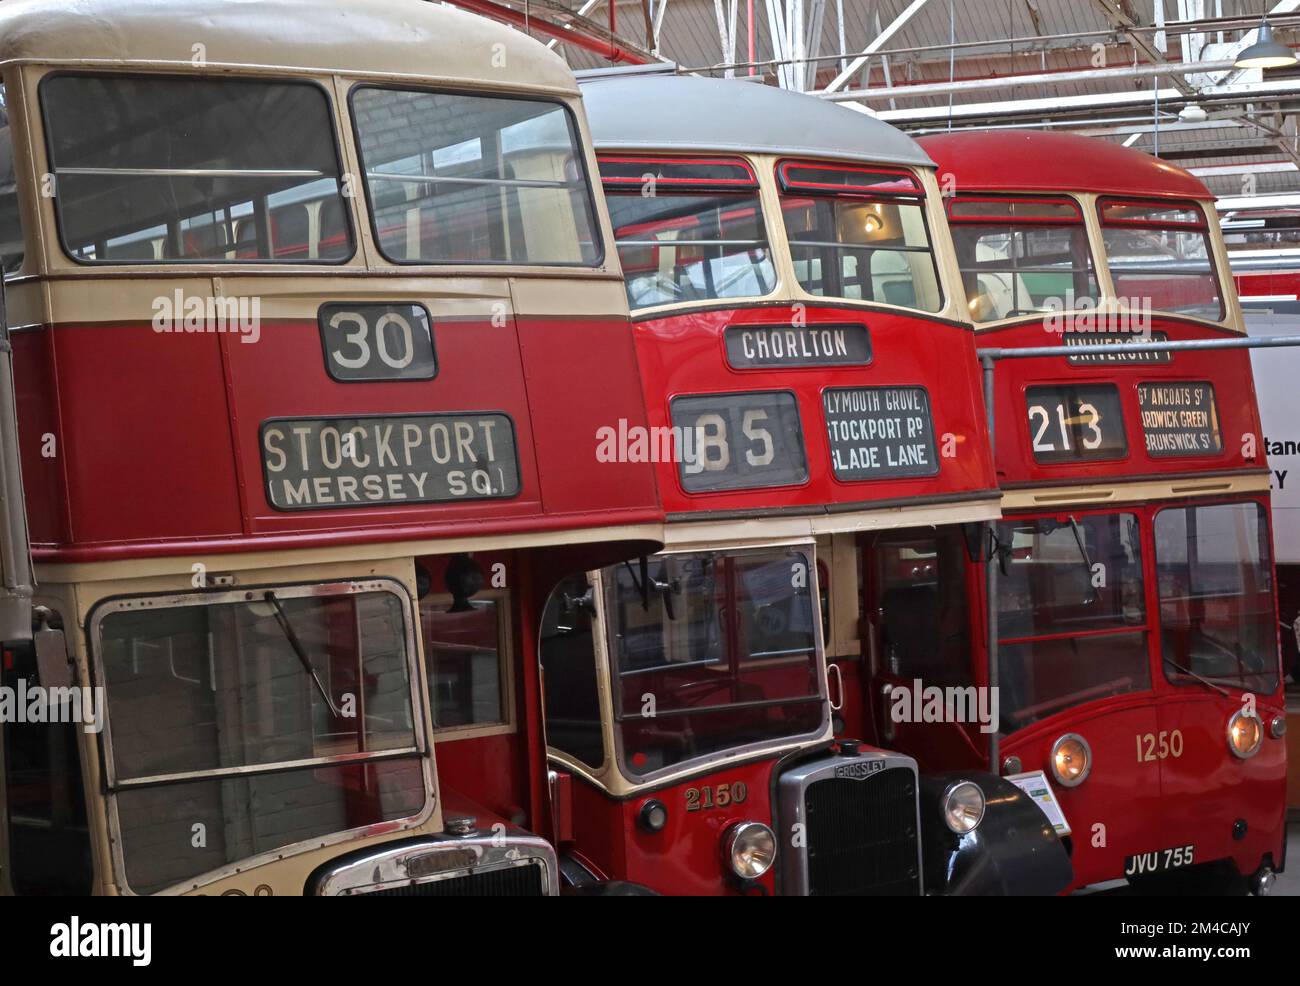 Trois bus rouges de Manchester, 30 Stockport Mersey Square, Chorlton 85, 213 vers l'université, dépôt de Queens Road, Cheetham Hil, Manchester, Angleterre, ROYAUME-UNI, M8 8EP Banque D'Images